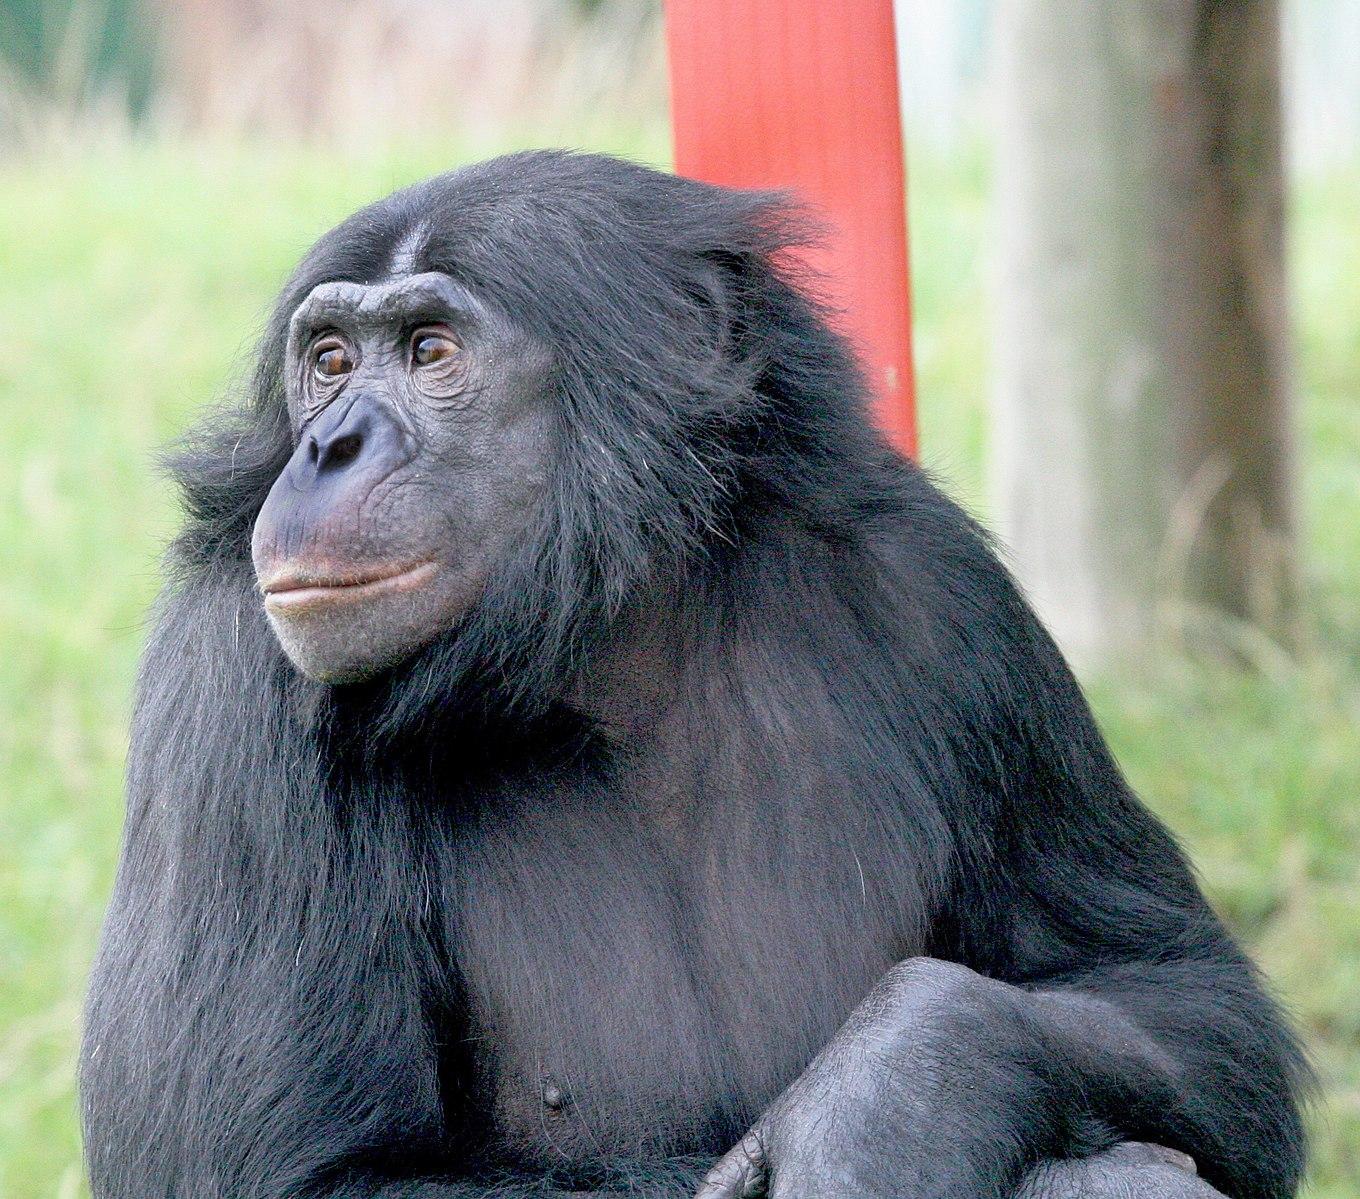 Bonobo looks away from the camera.